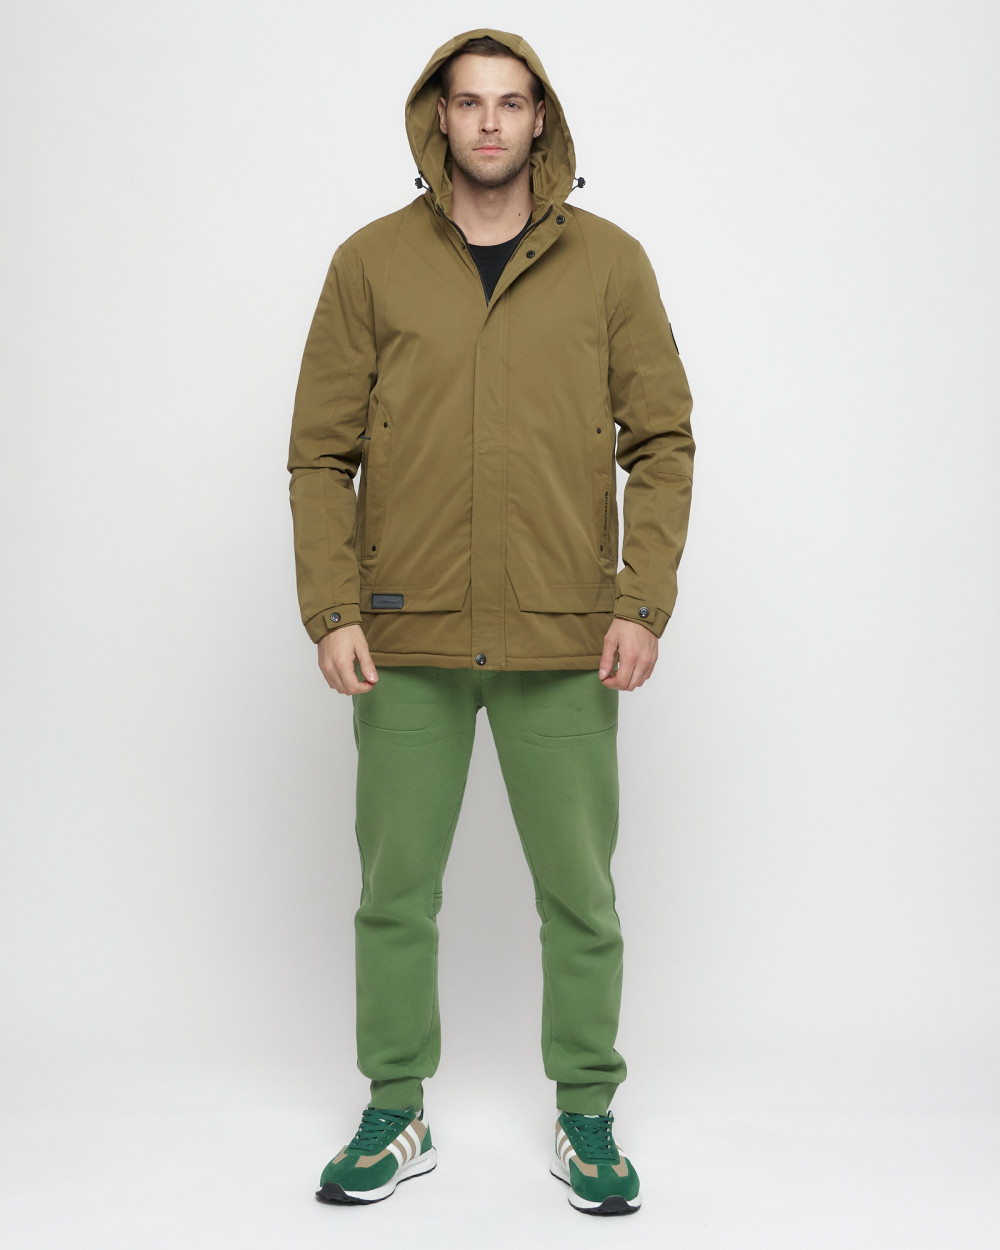 Купить куртку мужскую спортивную весеннюю оптом от производителя недорого в Москве 8599B 1